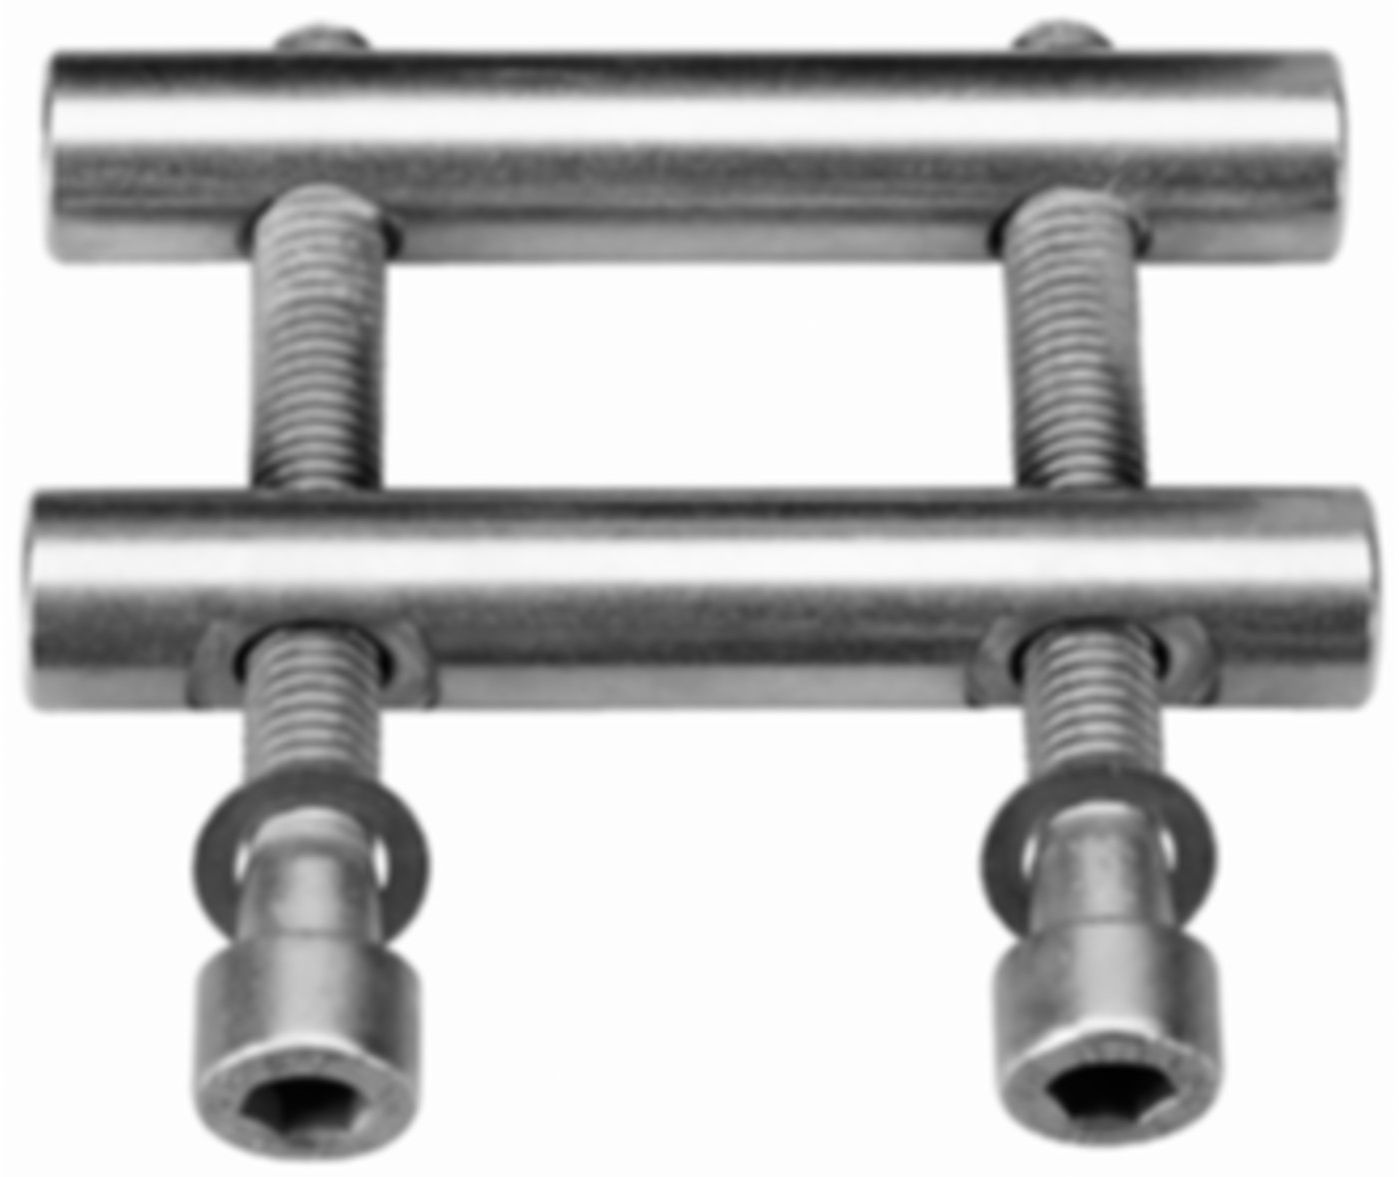 Verschlüsse aus rostfreiem Stahl zu Metal-/Plast-/Combi-Grip 125.0- 168.3 mm - Straub Kupplungen